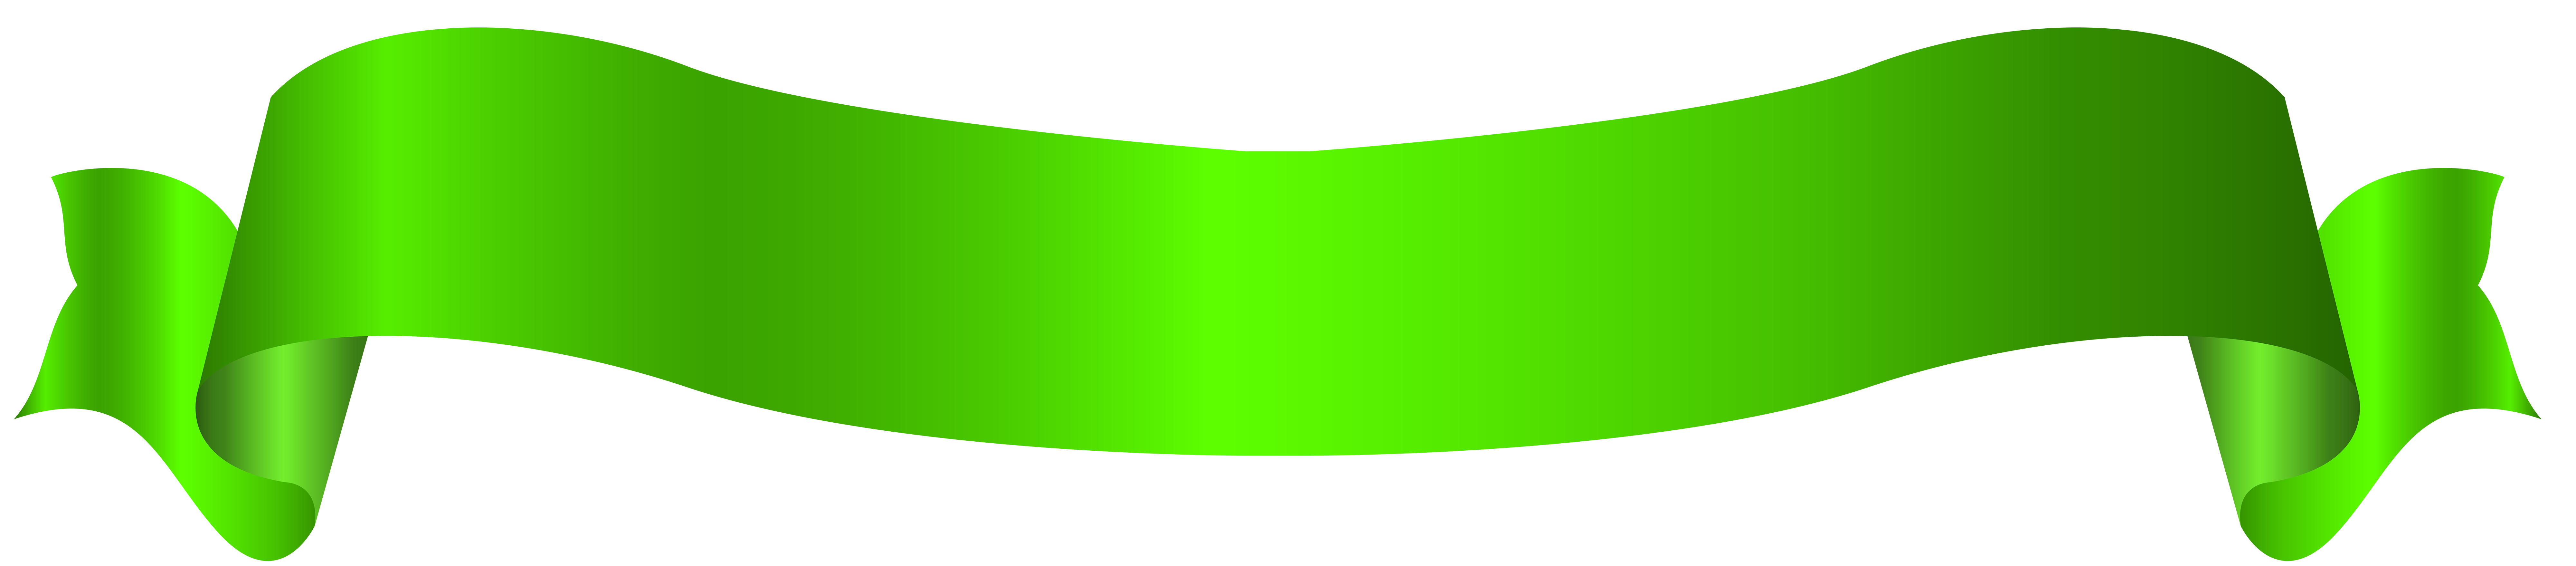 Banner Green Clip art - Long Green Banner PNG Transparent Clip Art ...